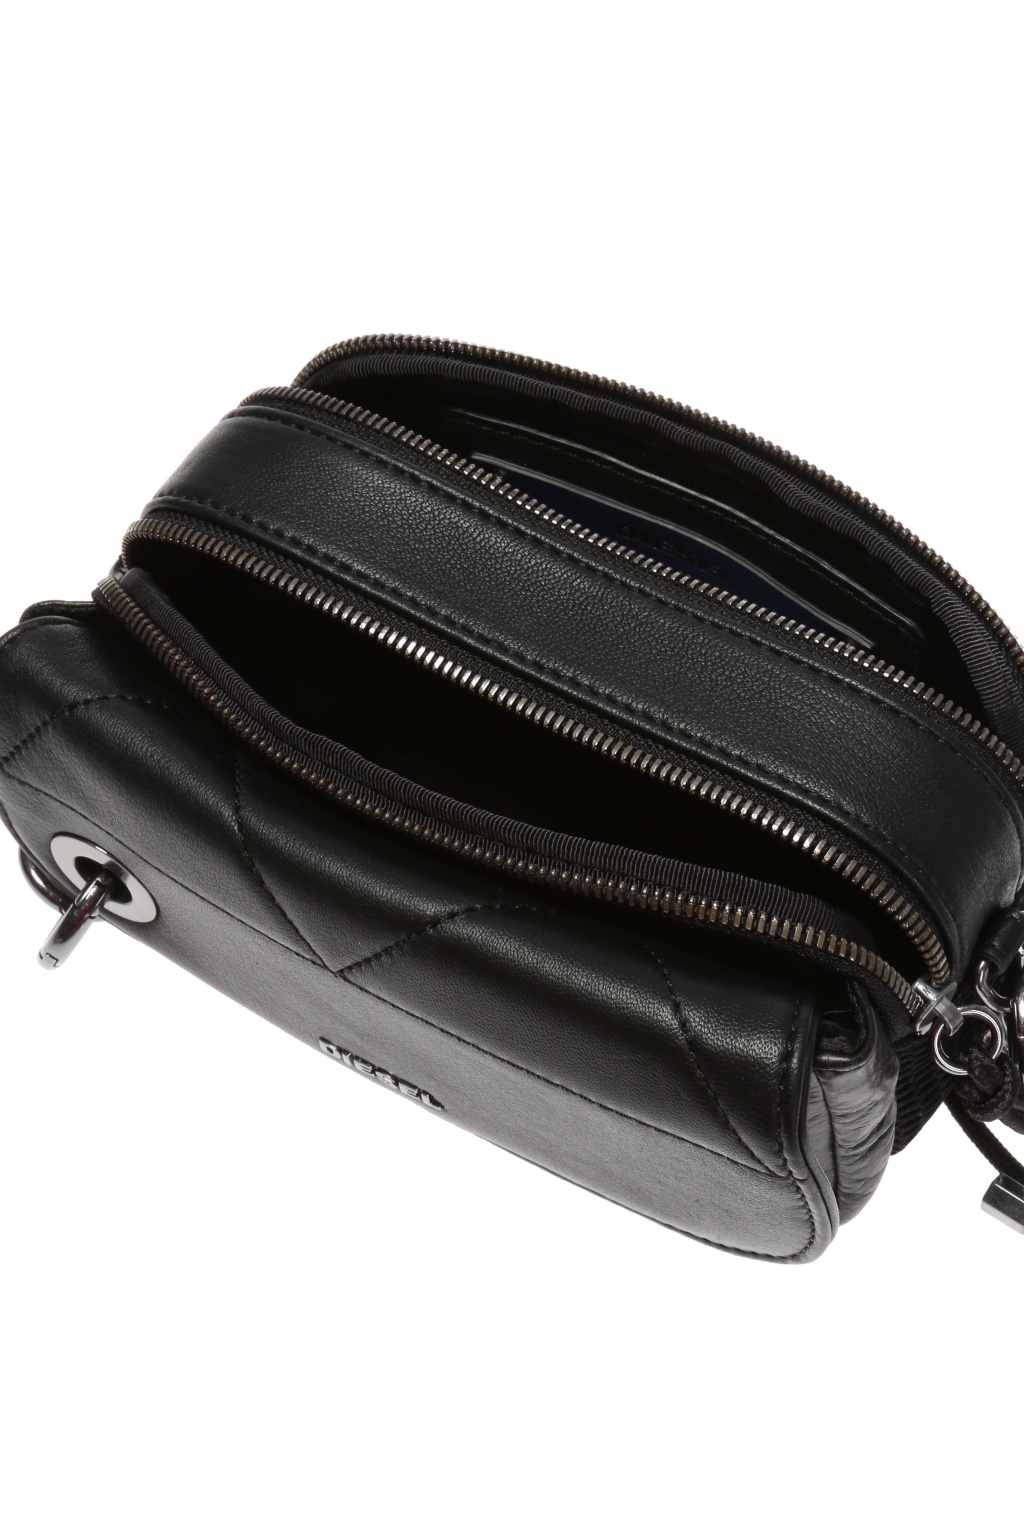 Diesel 'C-Clap Clap' shoulder bag | Women's Bags | Vitkac